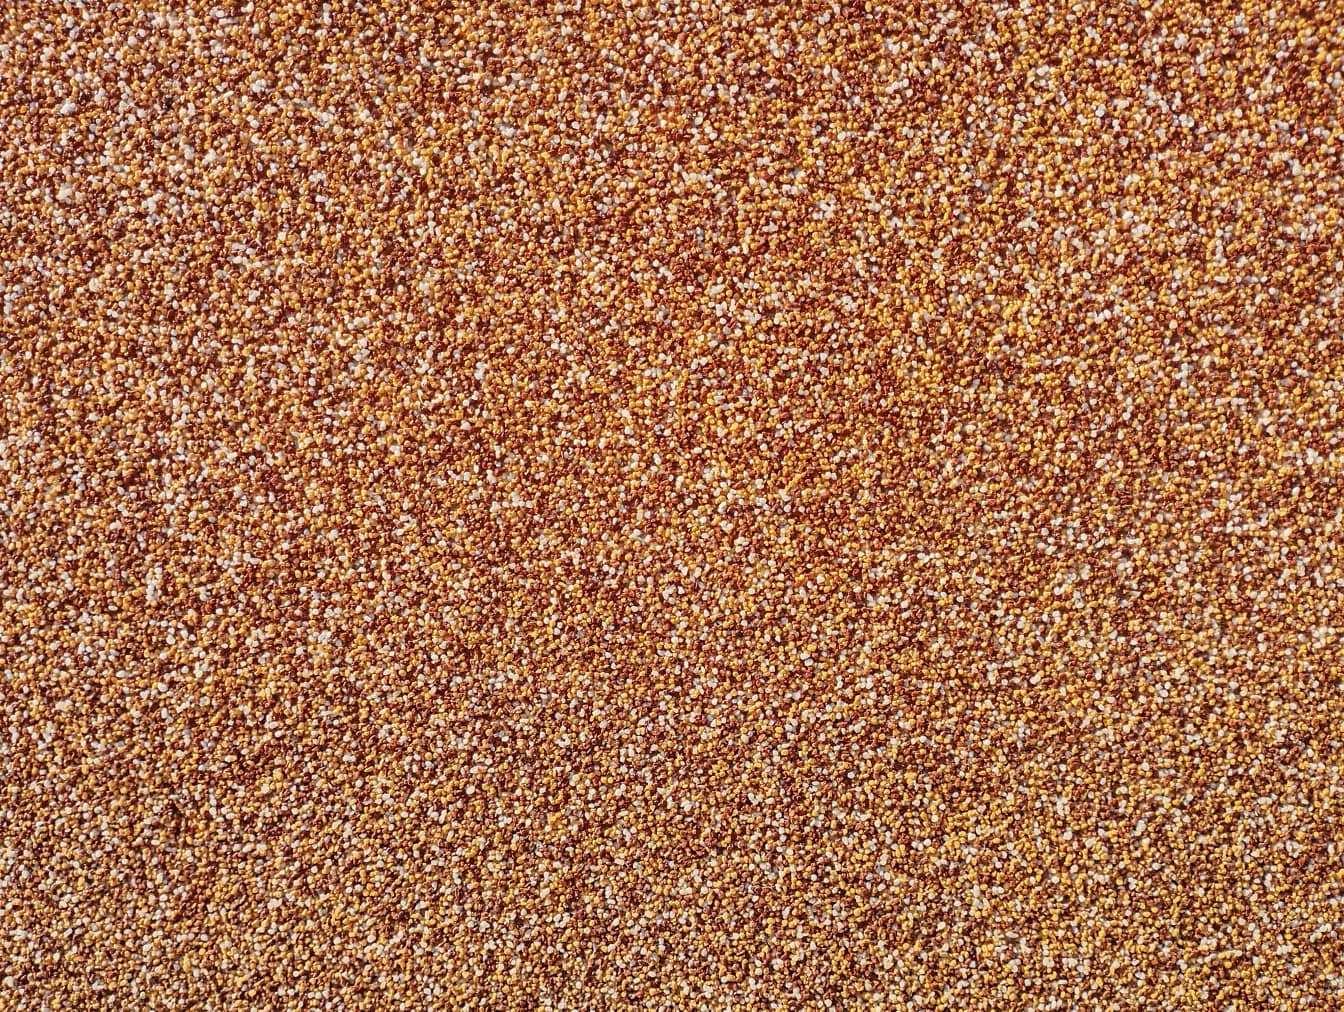 Textura de pequeños guijarros de color marrón amarillento, rojo oscuro y blanco